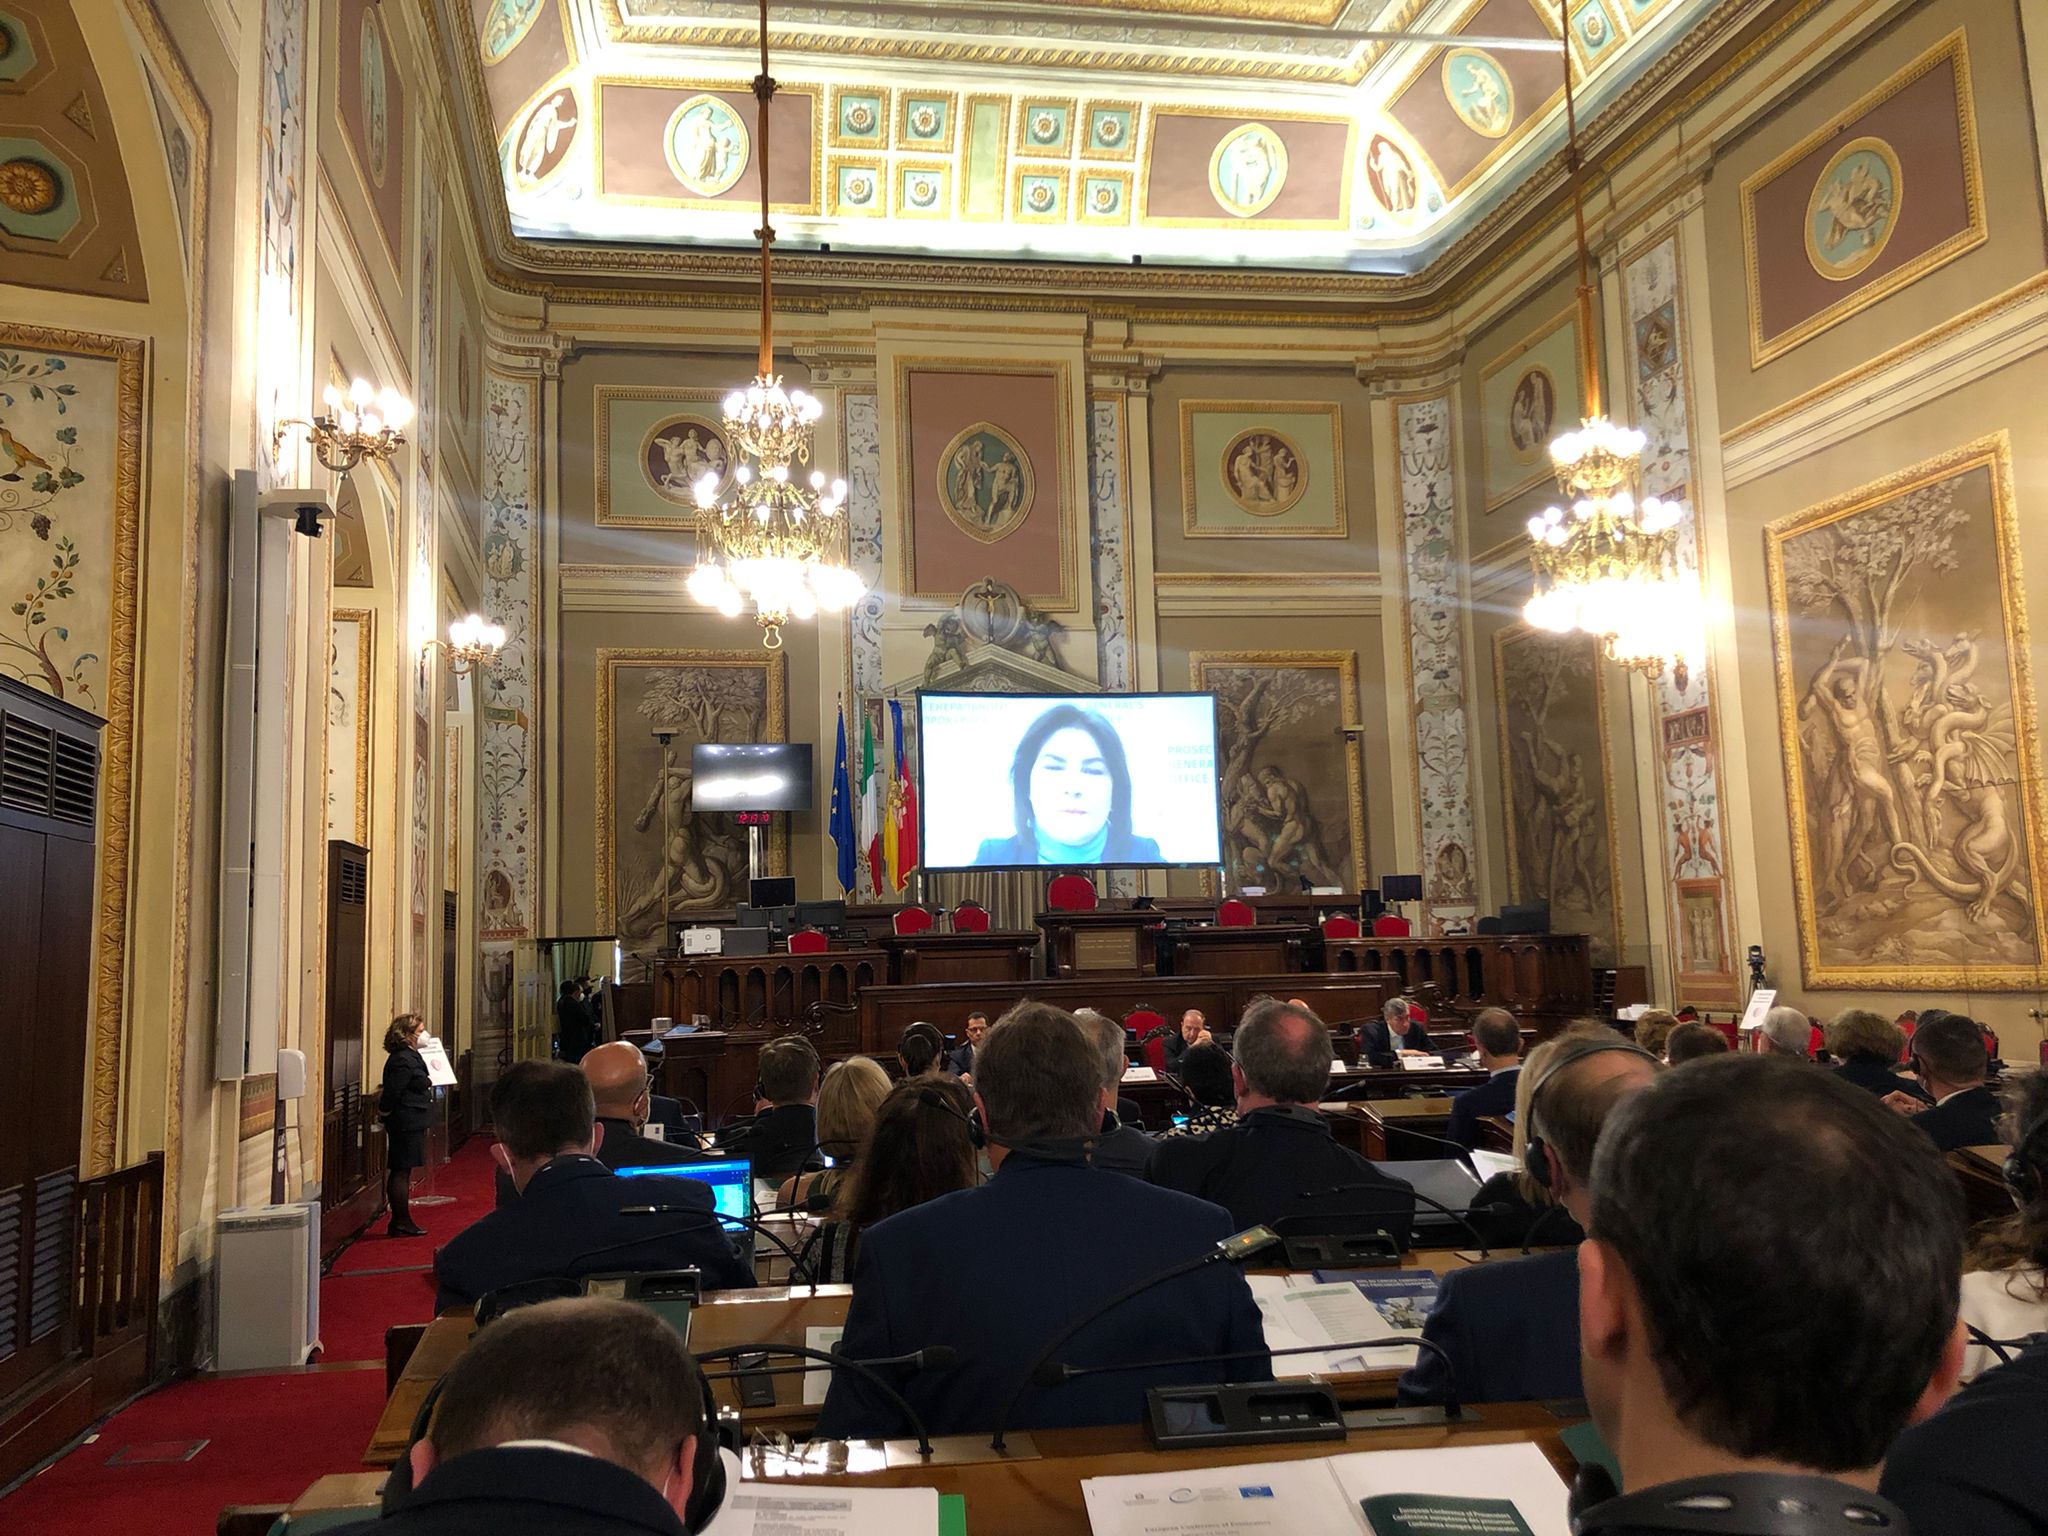 Prokurori no visas Eiropas pulcējas starptautiskā konferencē Palermo